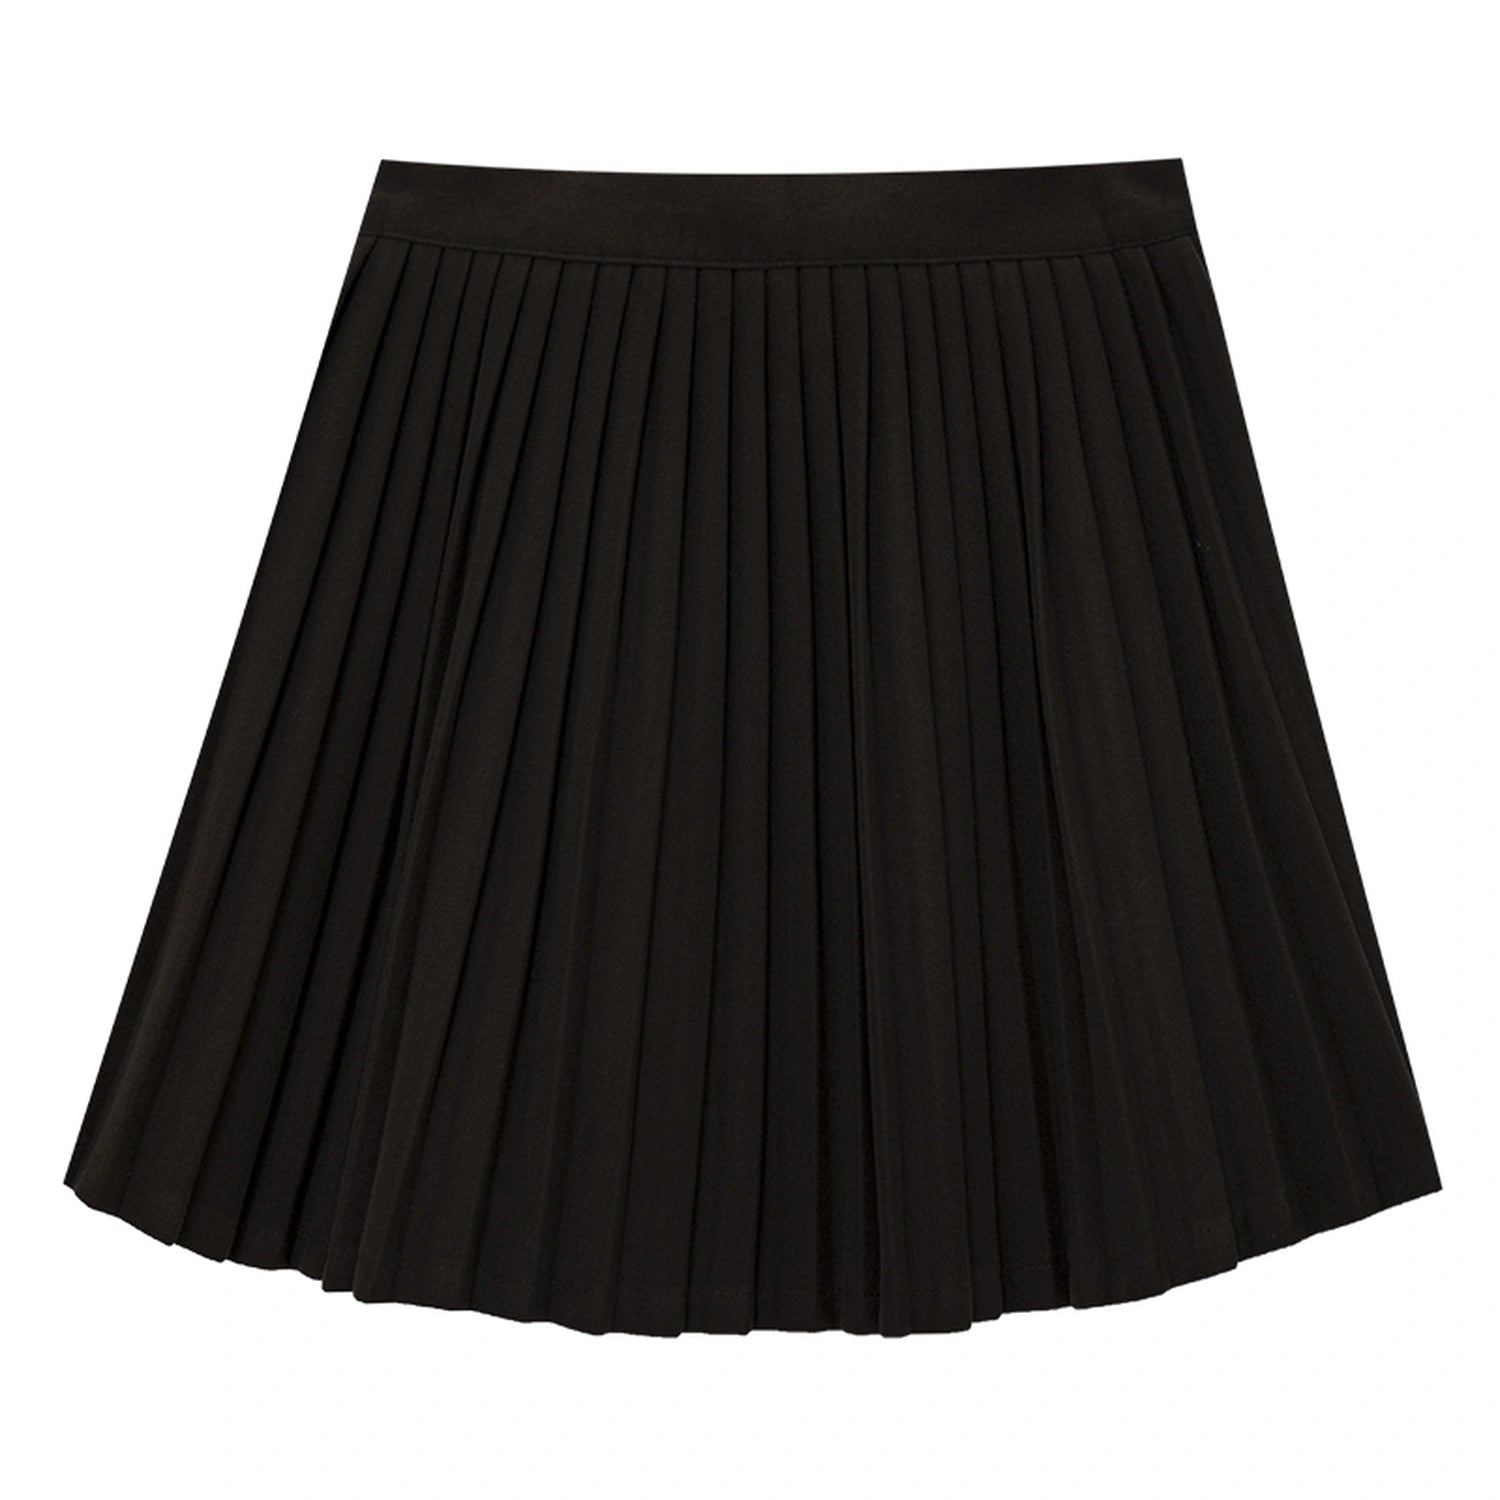 Pleated A-Line Tennis Skirt with Elastic Waistband